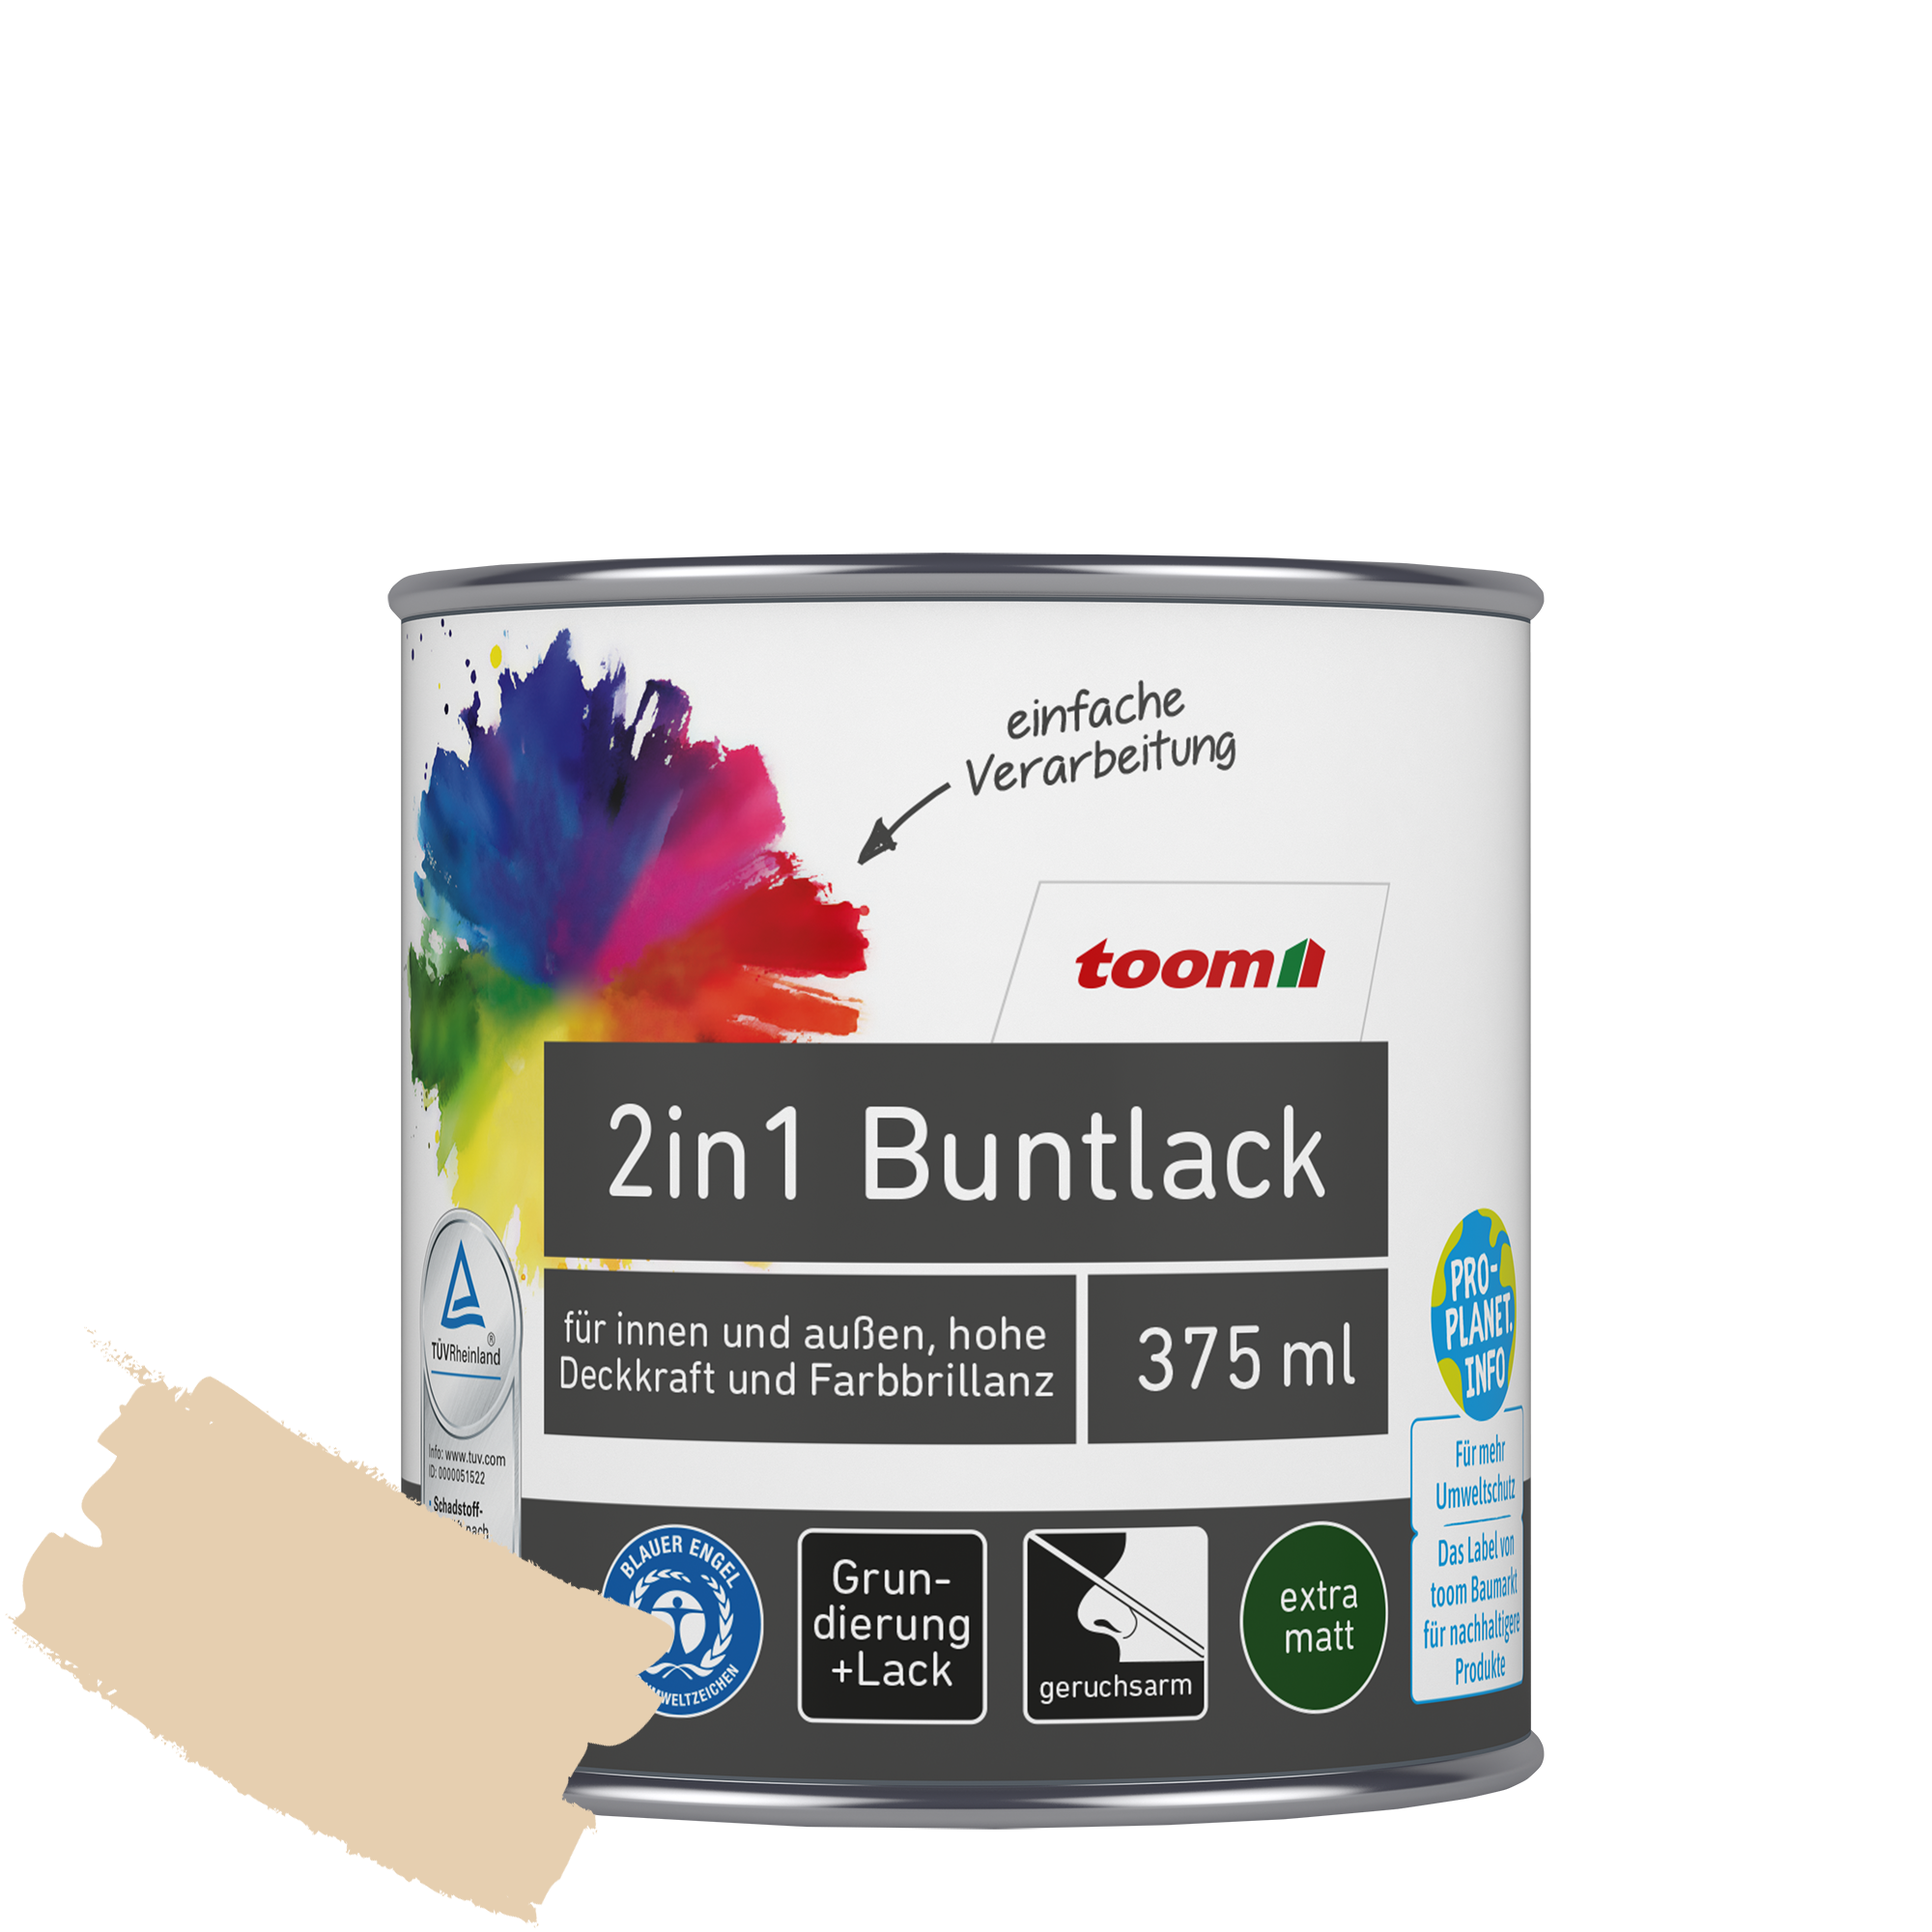 2in1 Buntlack 'Sonnenstrahl' hellelfenbein matt 375 ml + product picture